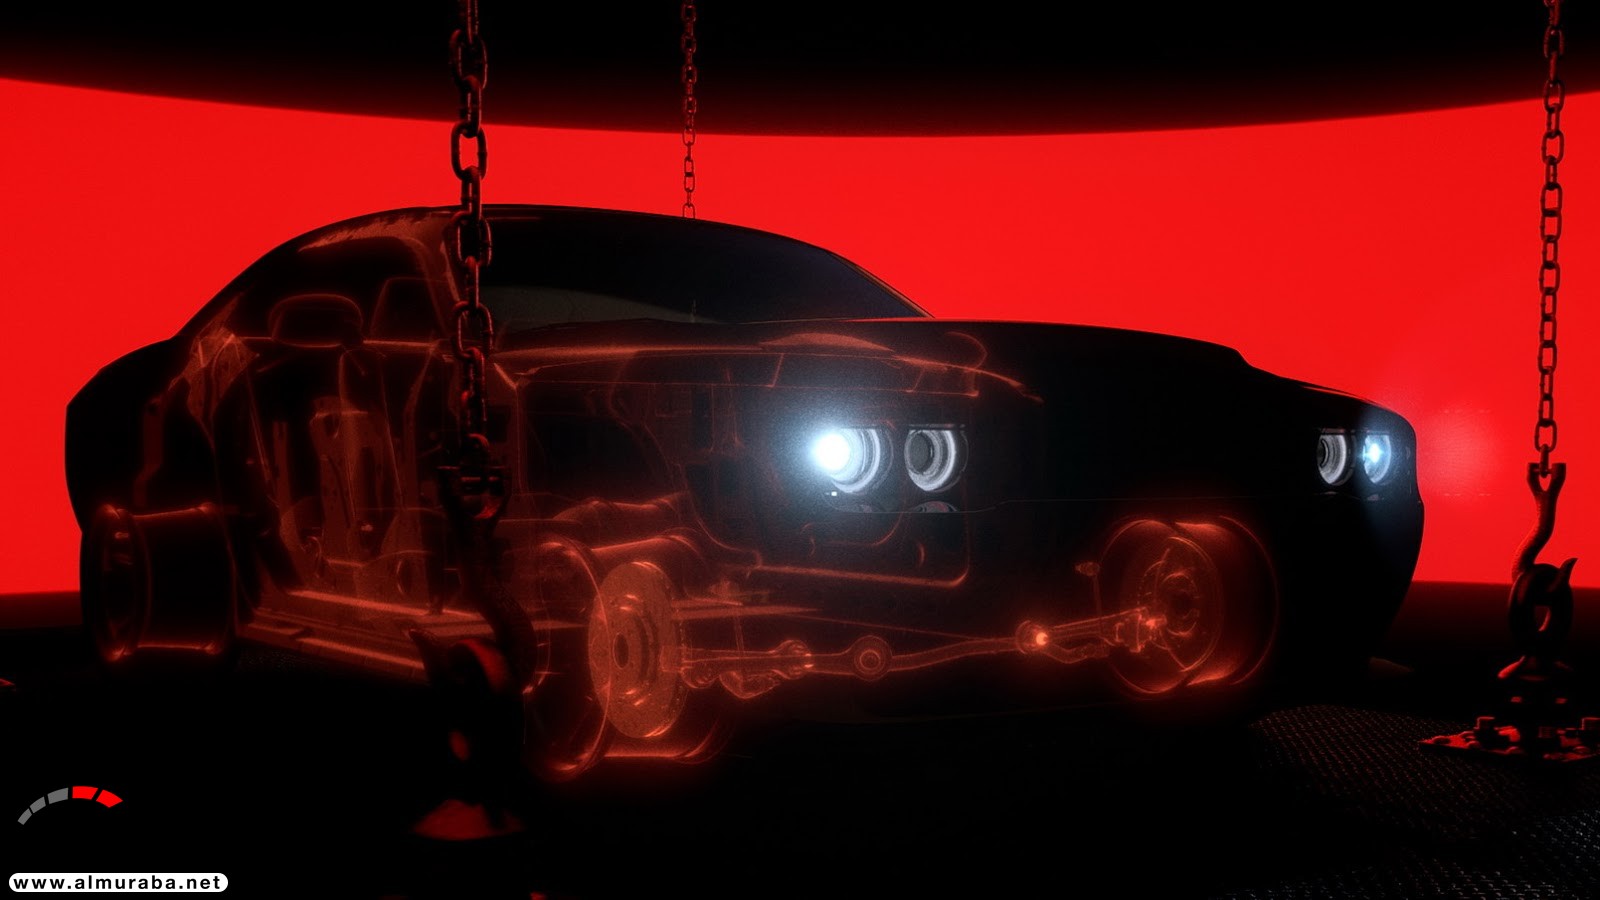 "فيديو وصور" دودج تشالنجر SRT 2018 ديمون نسخة الشيطان تكشف نفسها بقوة 840 حصاناً Dodge Challenger SRT Demon 176